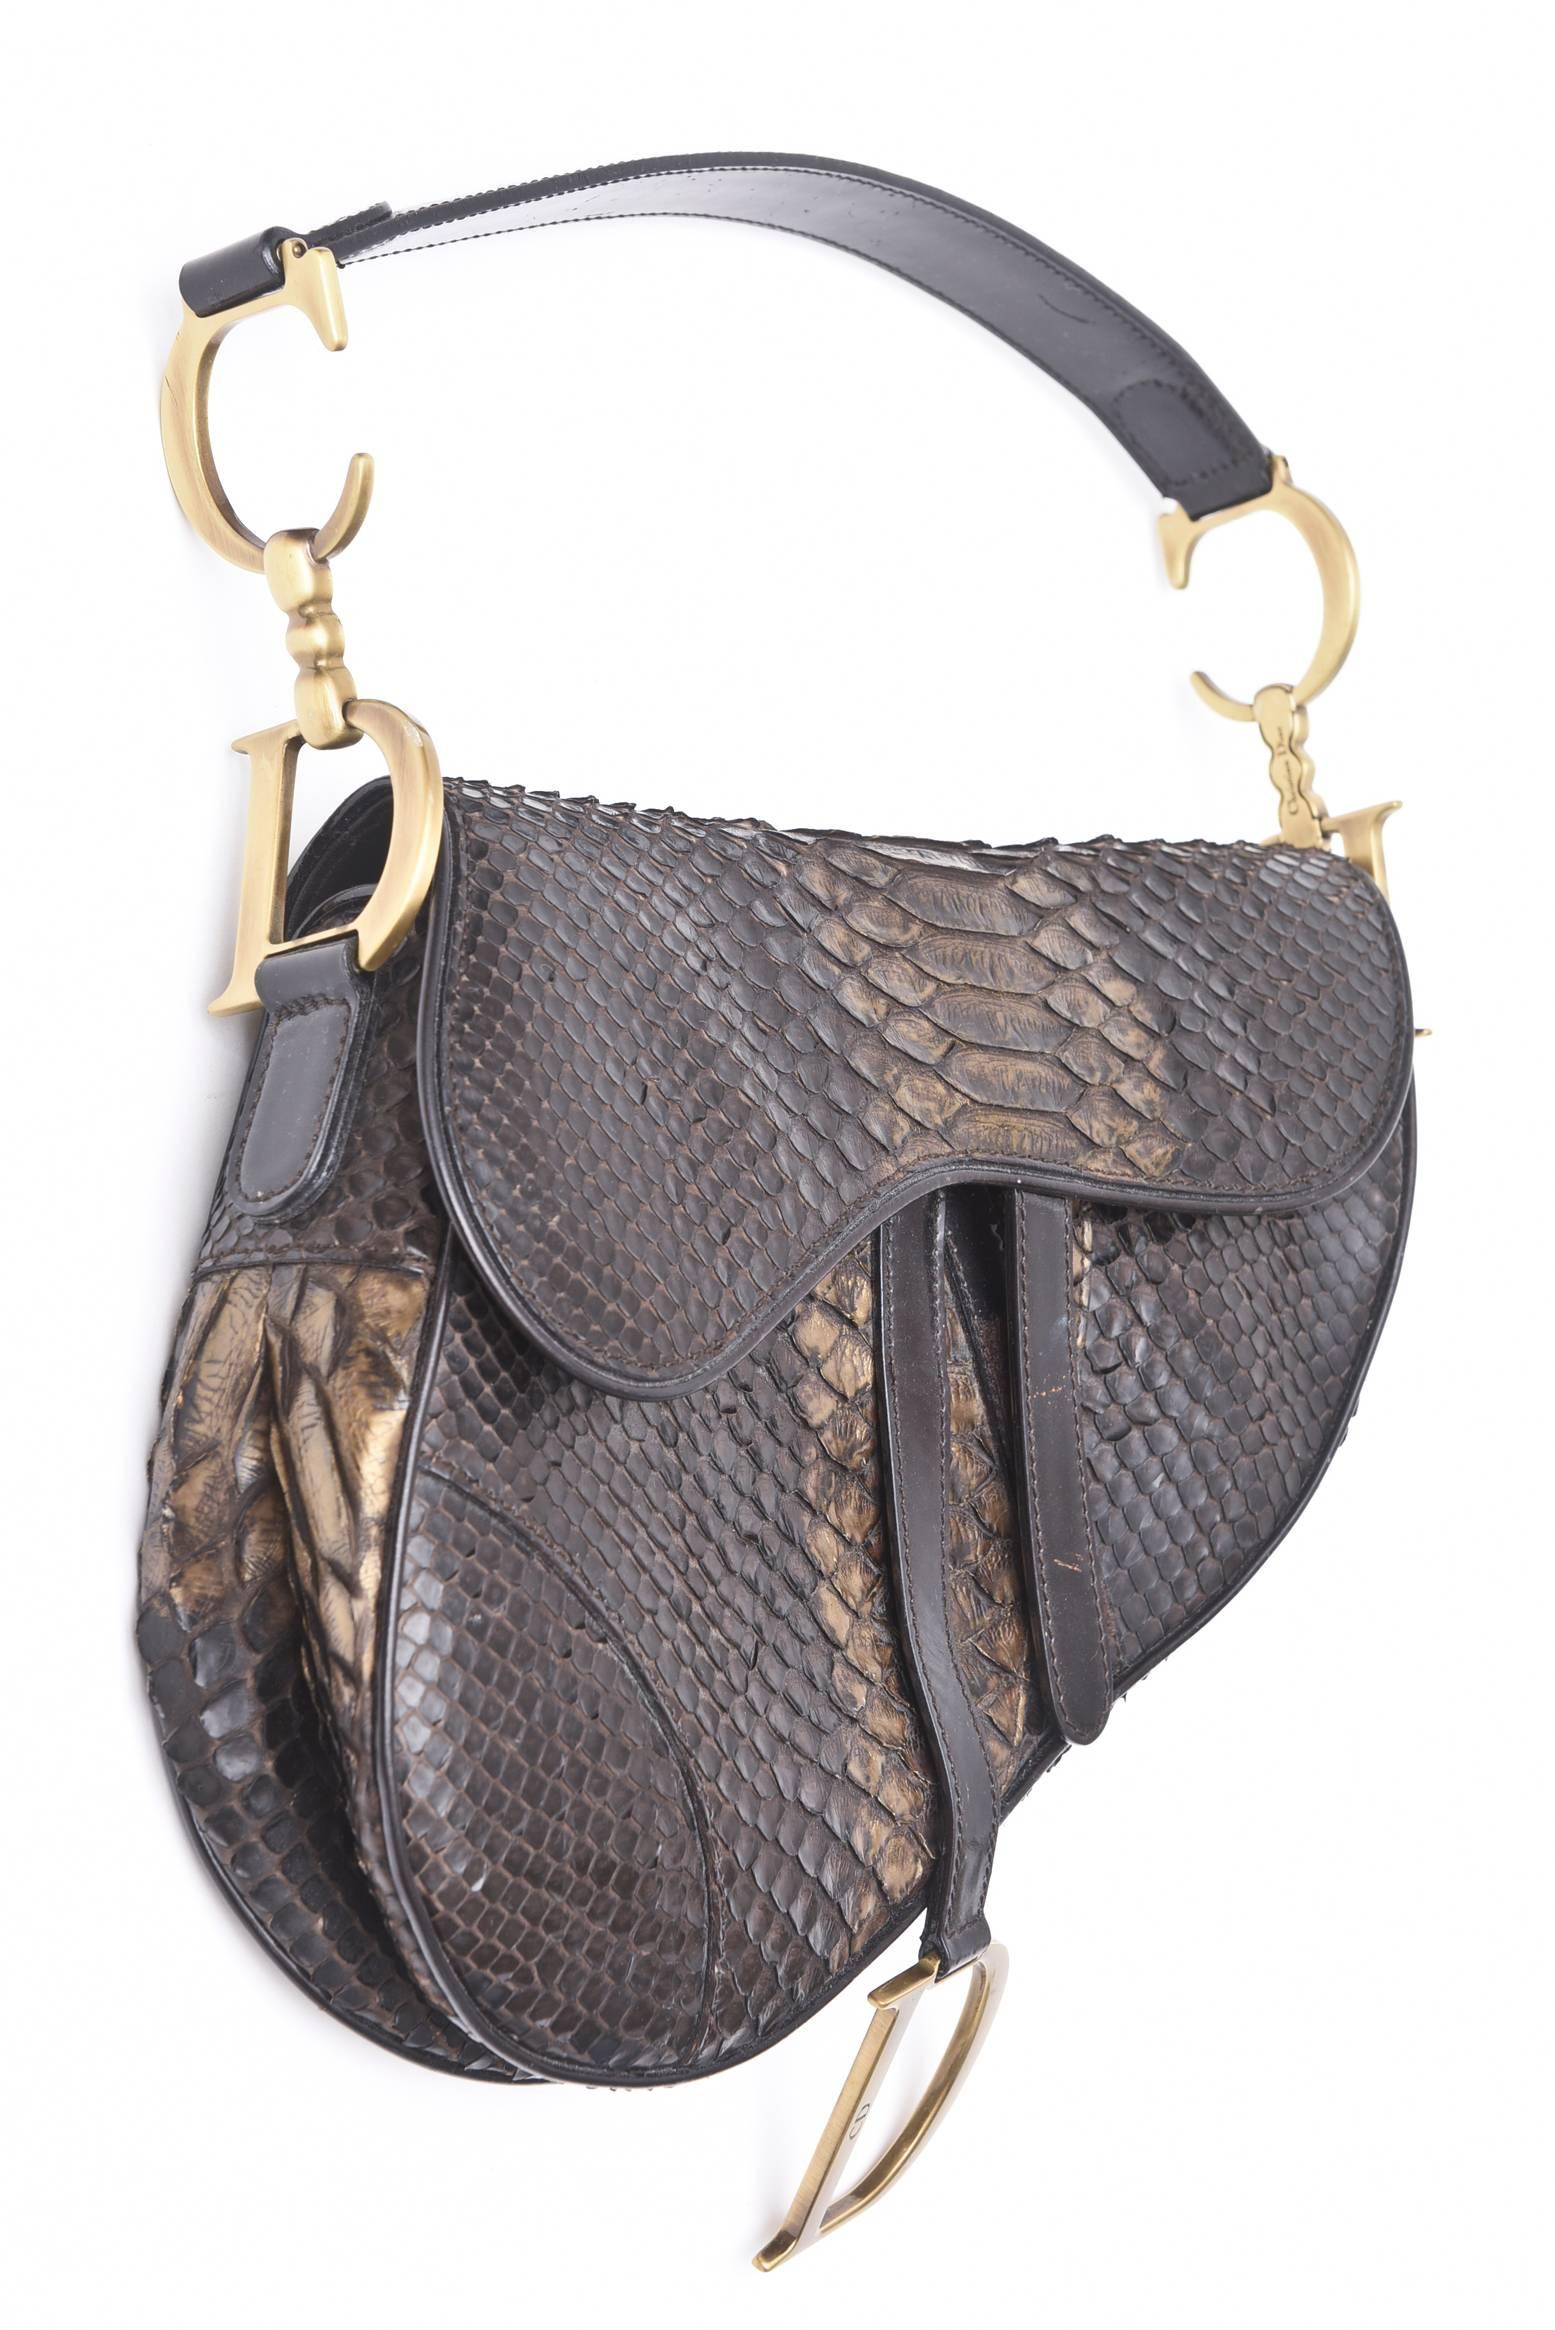 Diese atemberaubende und luxuriöse Satteltasche/Handtasche aus echtem Python ist ein Sammlerstück. Dies war die erste Tasche:: die John Galliano in den frühen 80er Jahren für Christian Dior entwarf. Zu beachten... Christian Dior macht nie